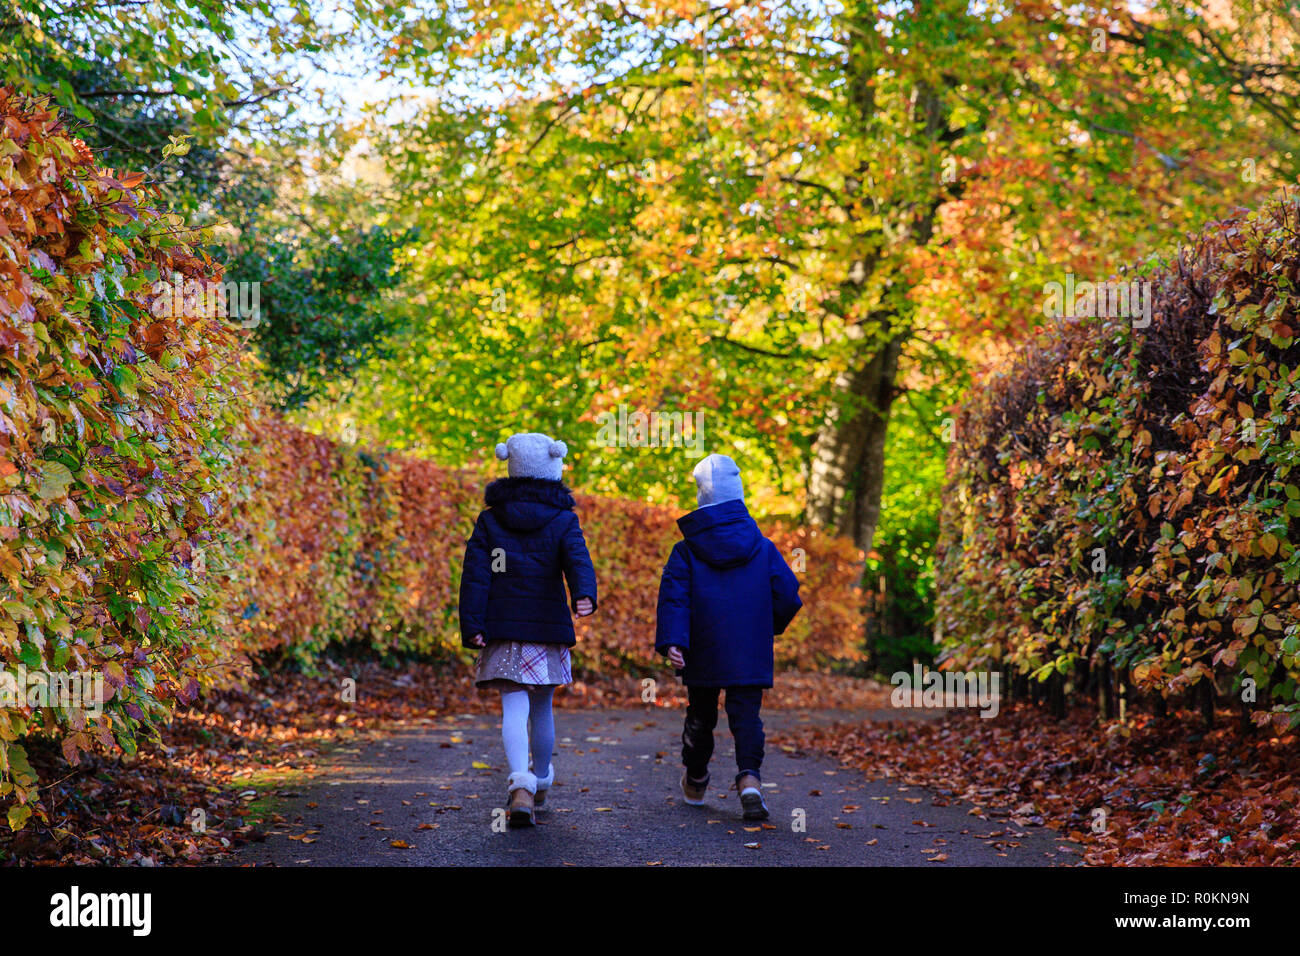 Spaziergang durch den Wald im Herbst Herbst Farben um Belvedere House Gardens & Park in Mullingar, Irland abgedeckt. Stockfoto